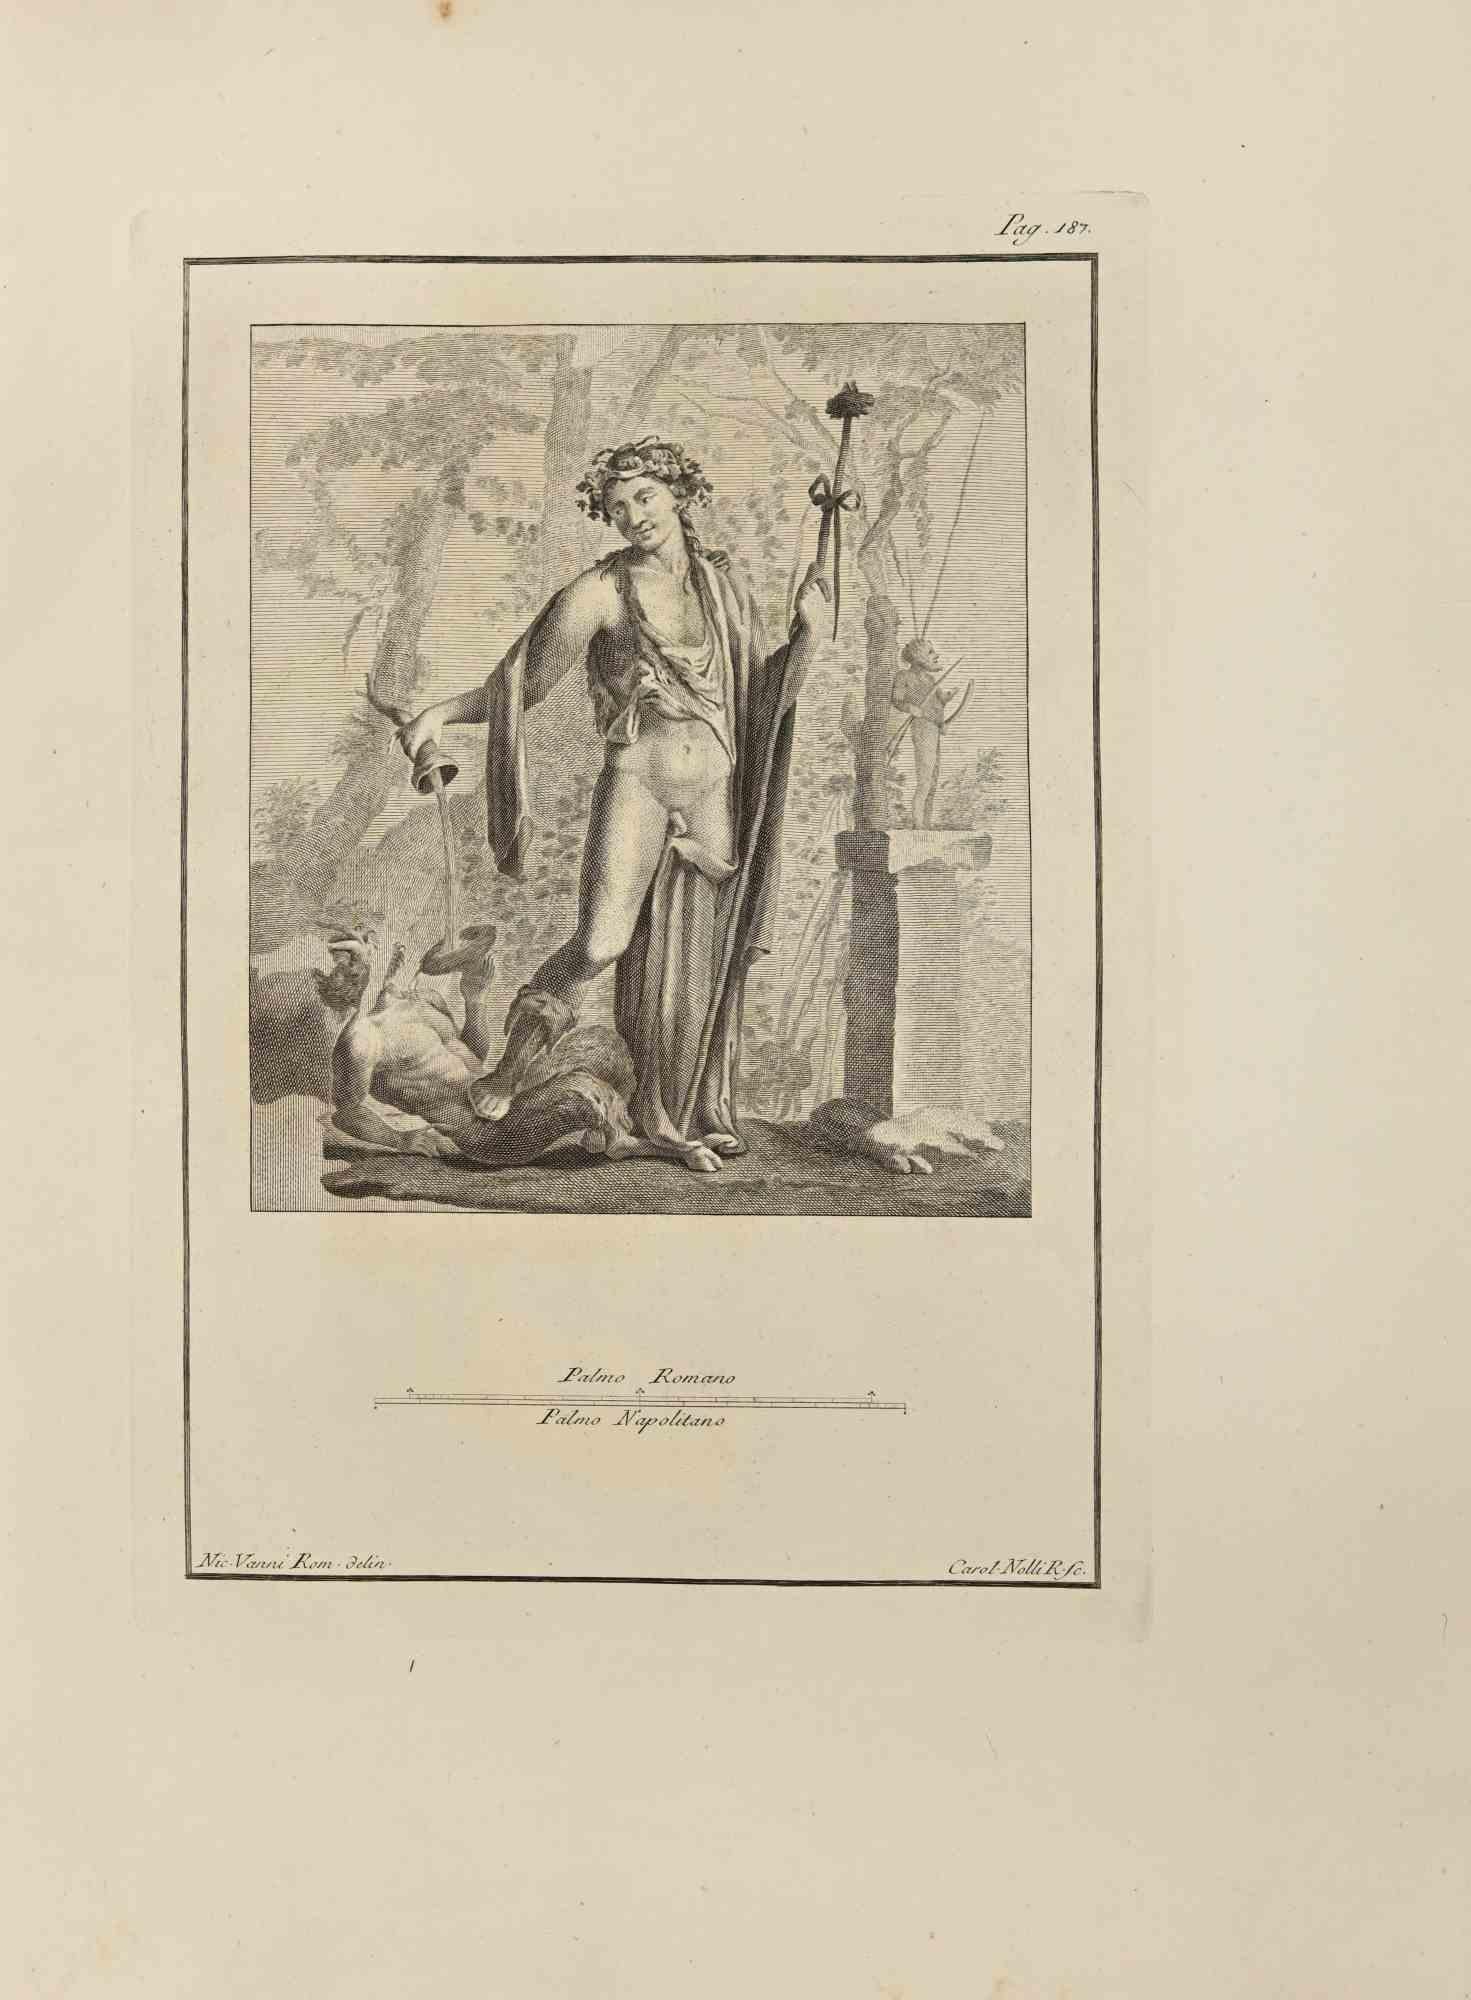 Bacchus avec Thyrsus et Pan des "Antiquités d'Herculanum" est une gravure sur papier réalisée par Carlo Nolli au 18ème siècle.

Signé sur la plaque.

Bon état avec quelques pliages et des rousseurs.

La gravure appartient à la suite d'estampes